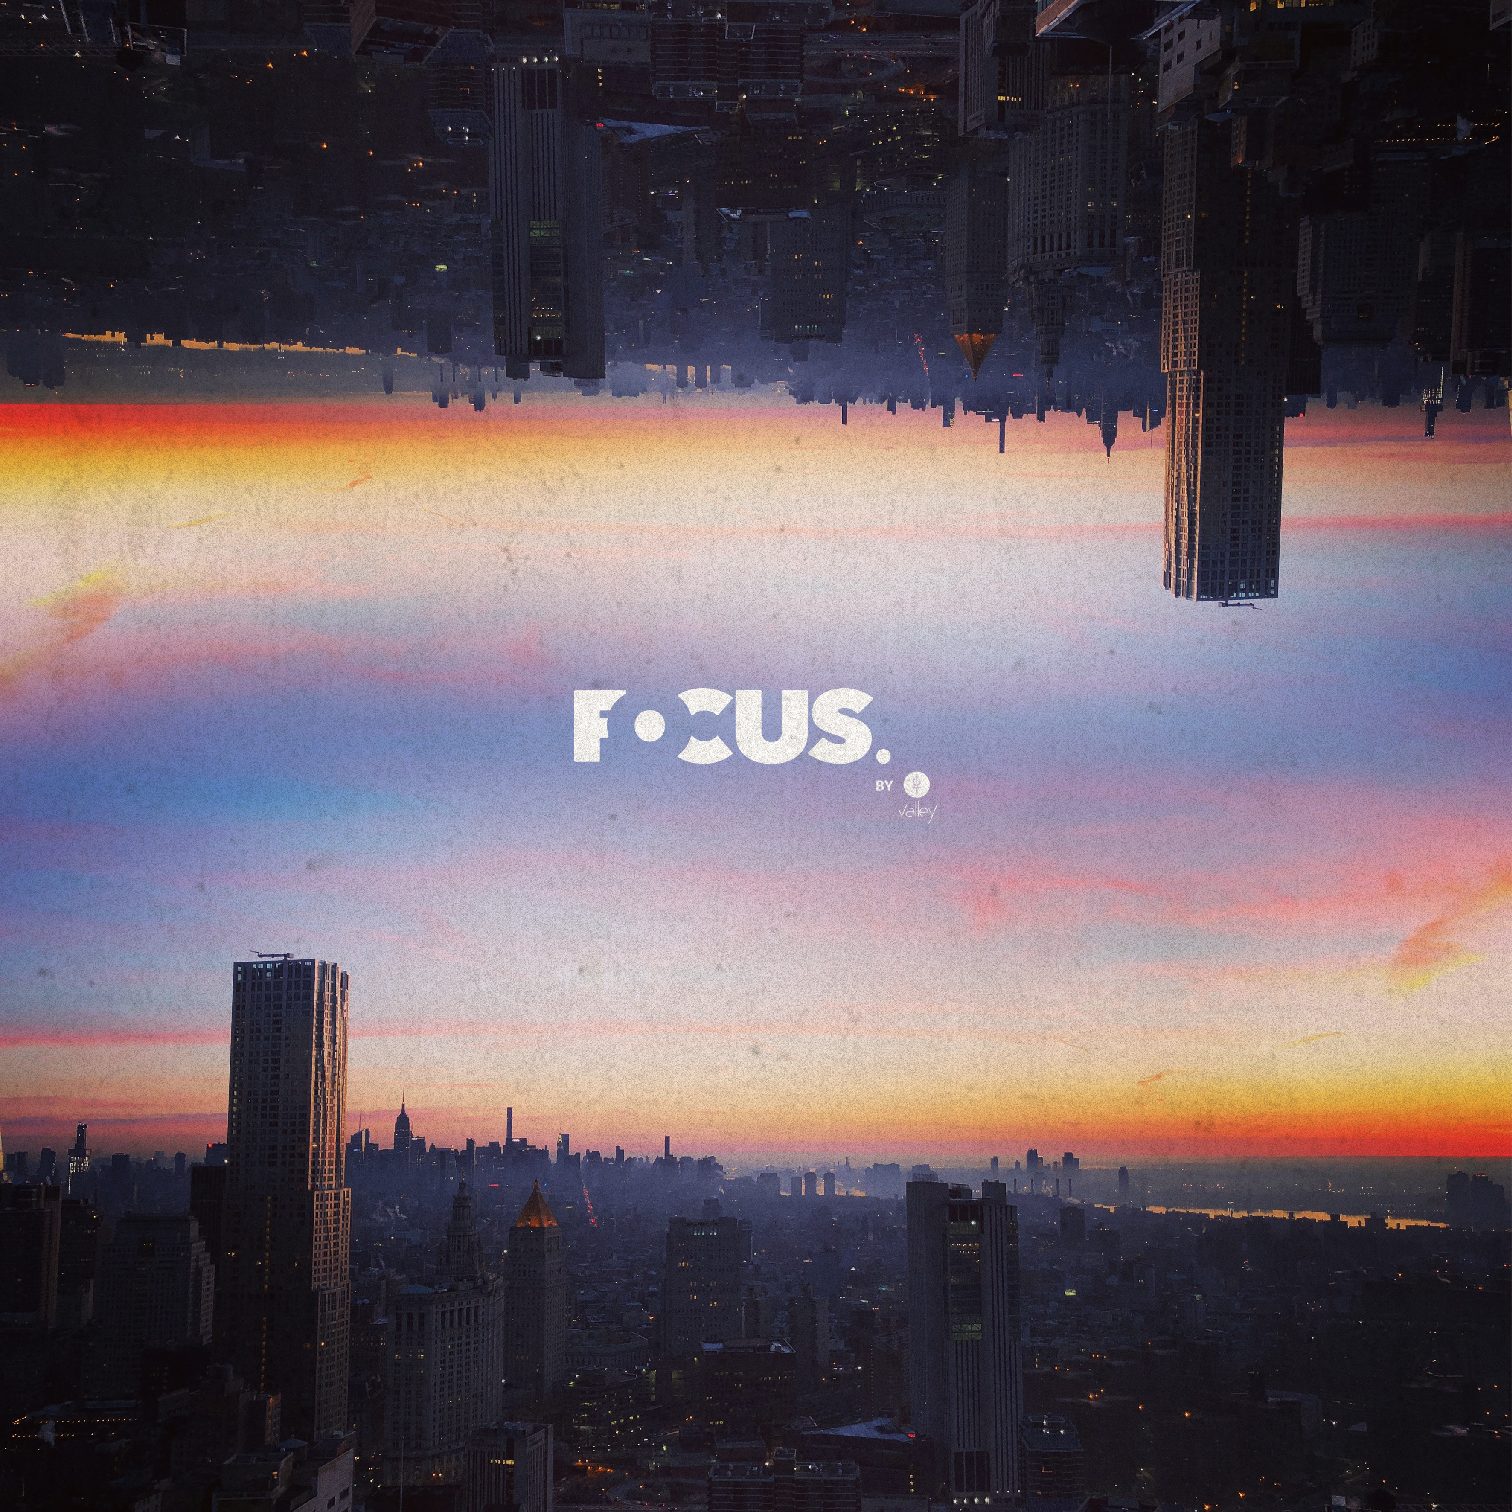 focus-utopie-ville-v3 copie